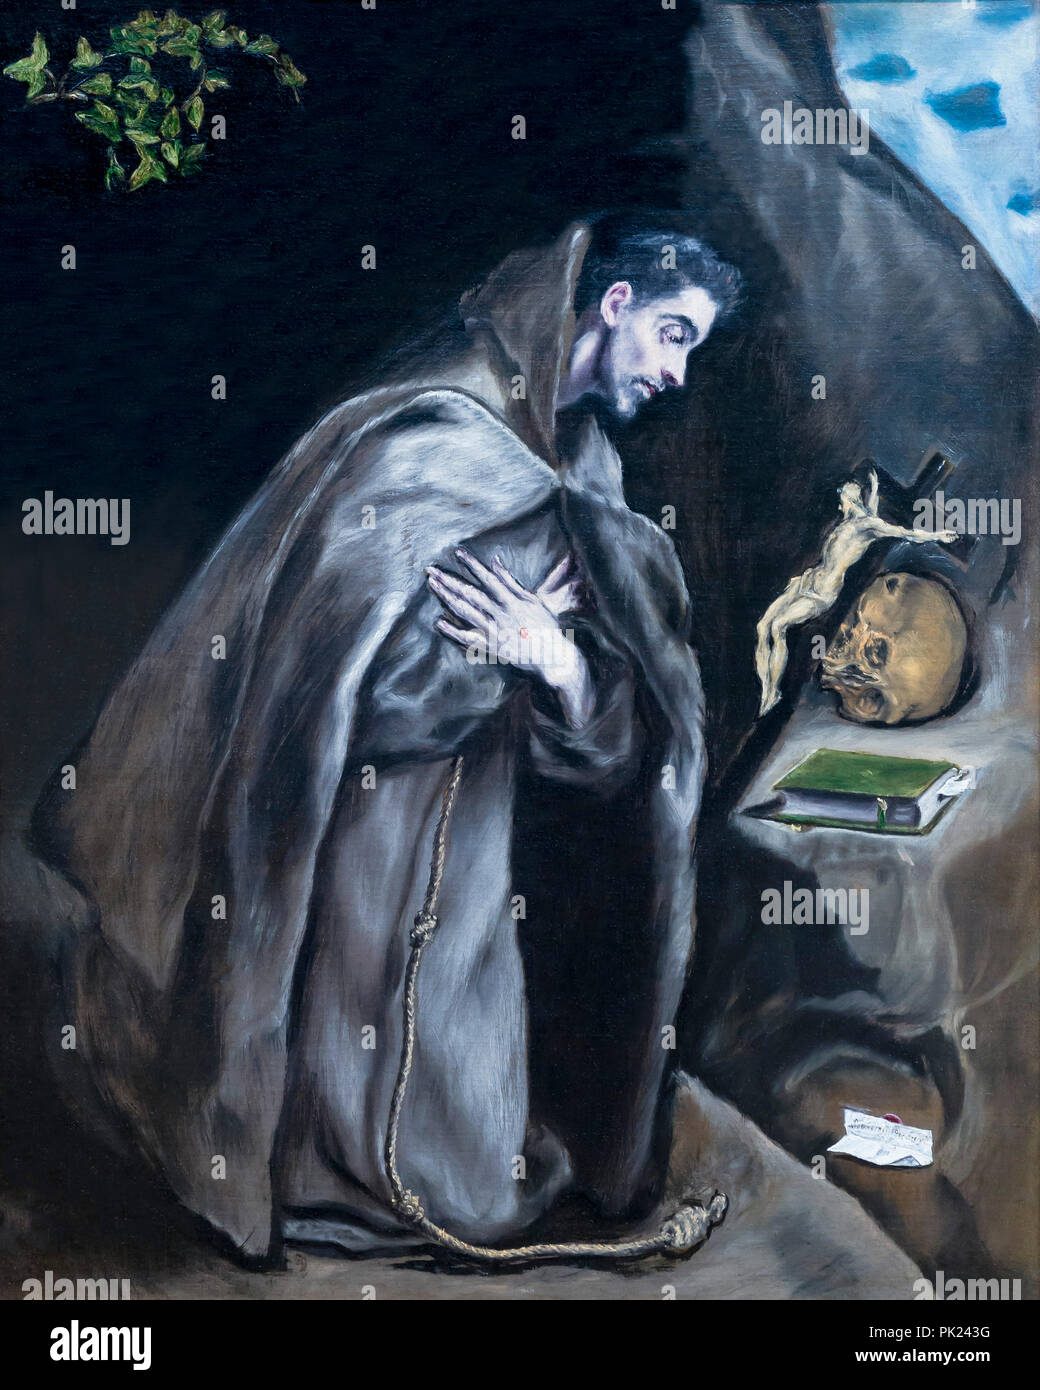 San Francesco inginocchiato in meditazione, El Greco, 1595-1600, Art Institute of Chicago, Chicago, Illinois, USA, America del nord, Foto Stock